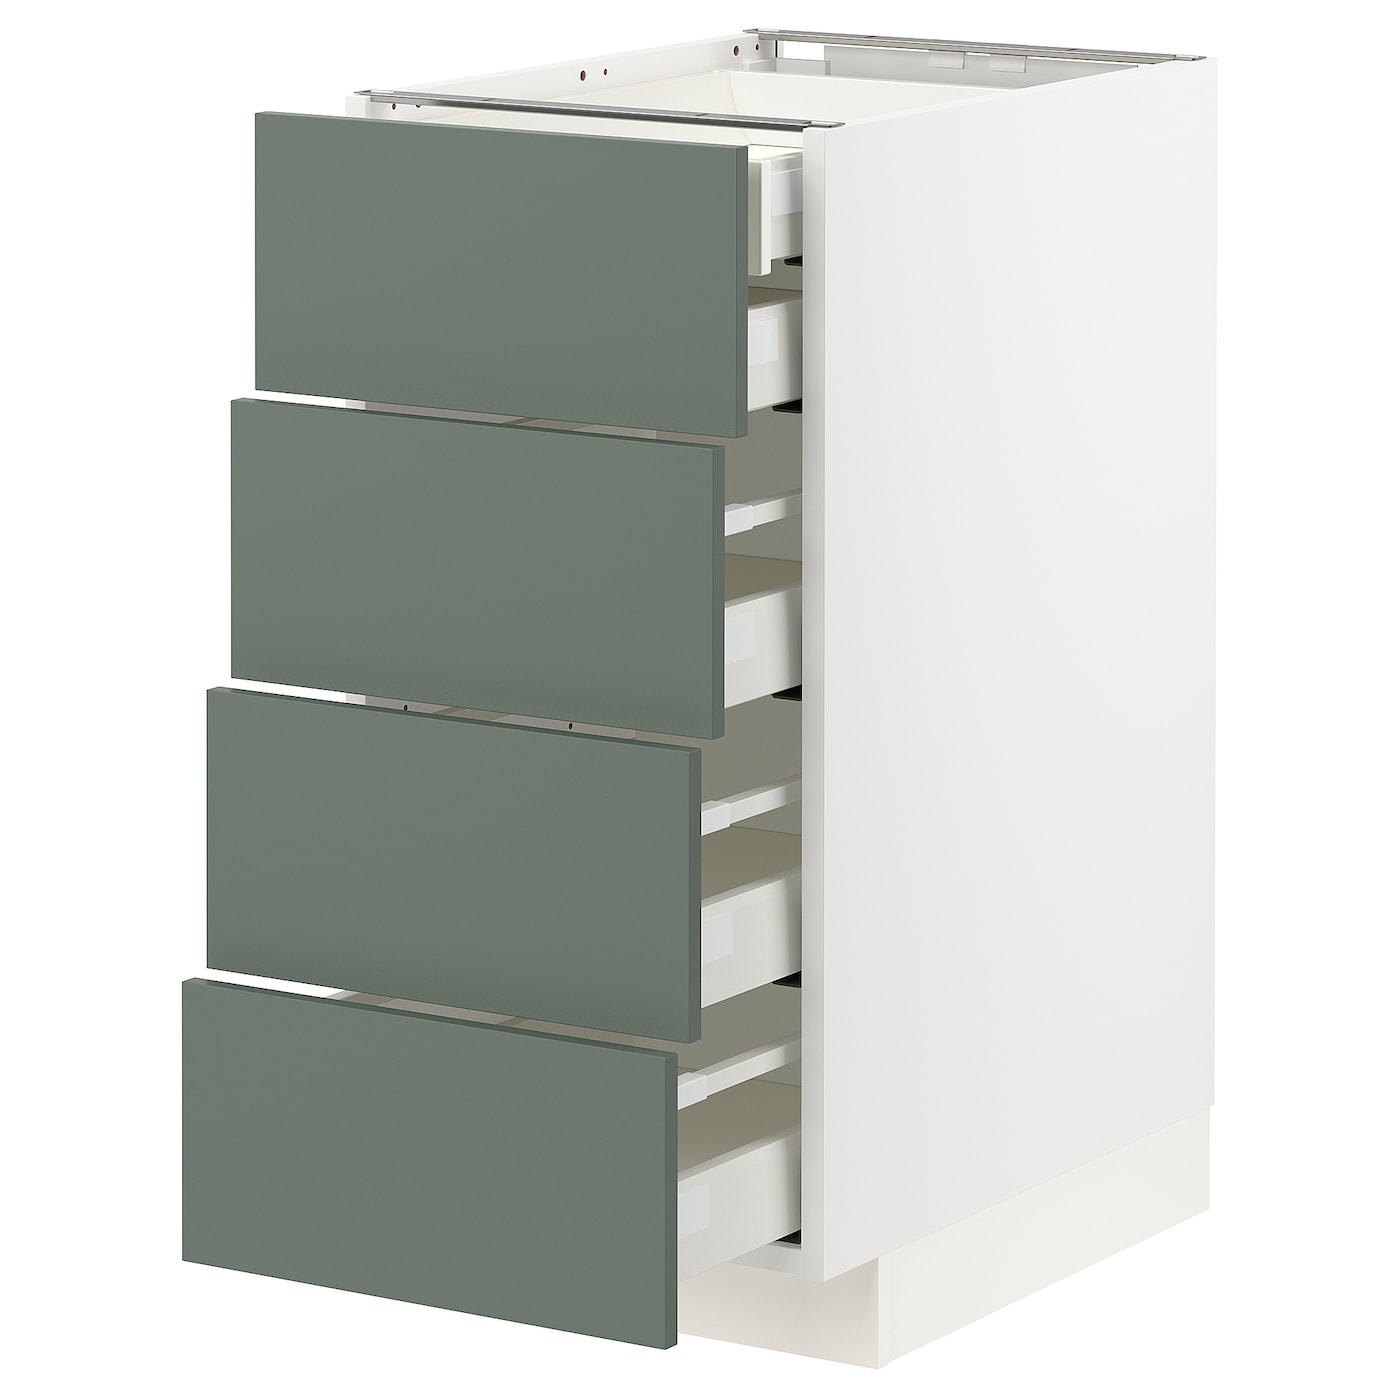 Напольный кухонный шкаф  - IKEA METOD MAXIMERA, 88x62x40см, белый/серо-зеленый, МЕТОД МАКСИМЕРА ИКЕА